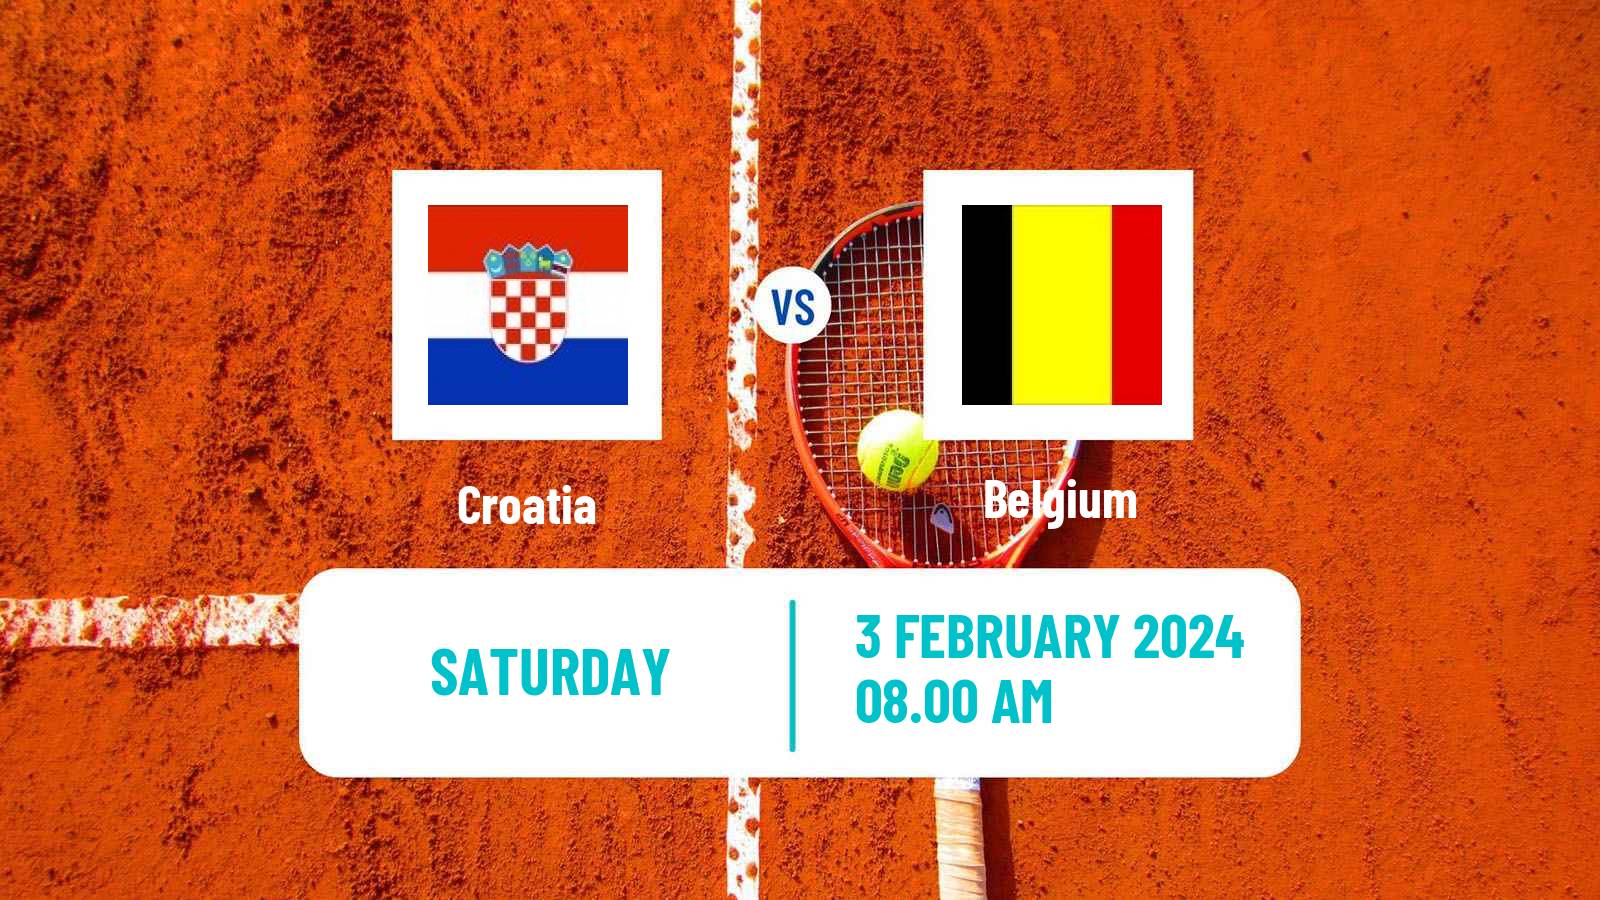 Tennis Davis Cup - World Group Teams Croatia - Belgium